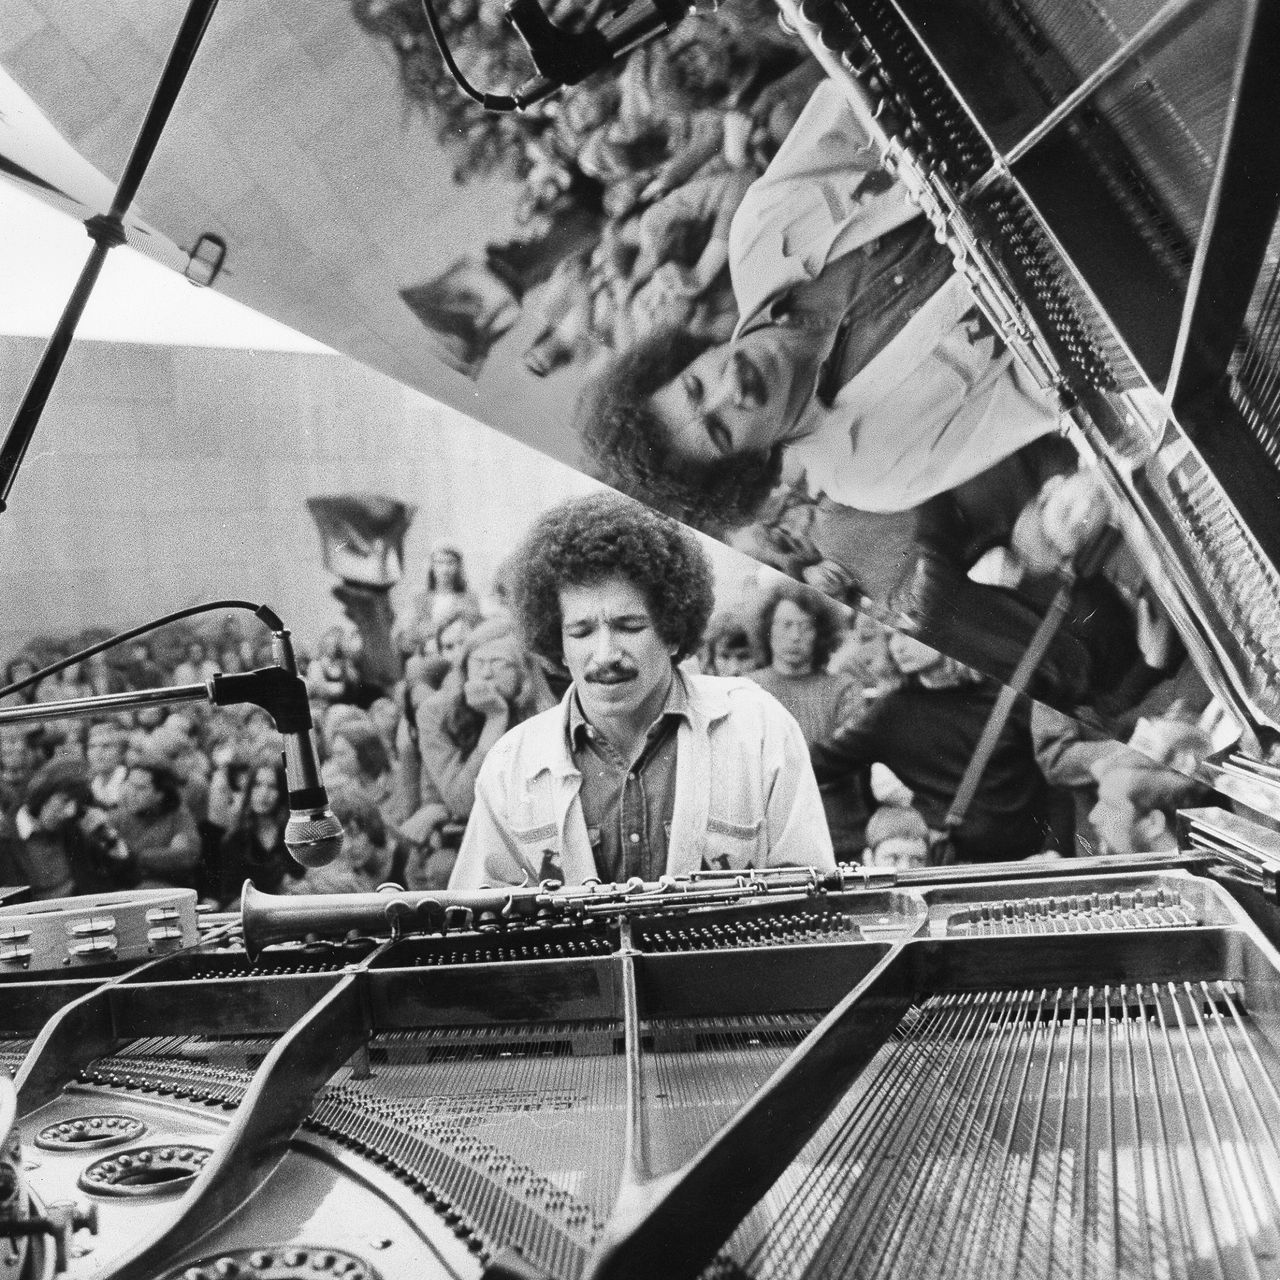 피아니스트 키스 재럿 당시 모습 1977년도.jpg